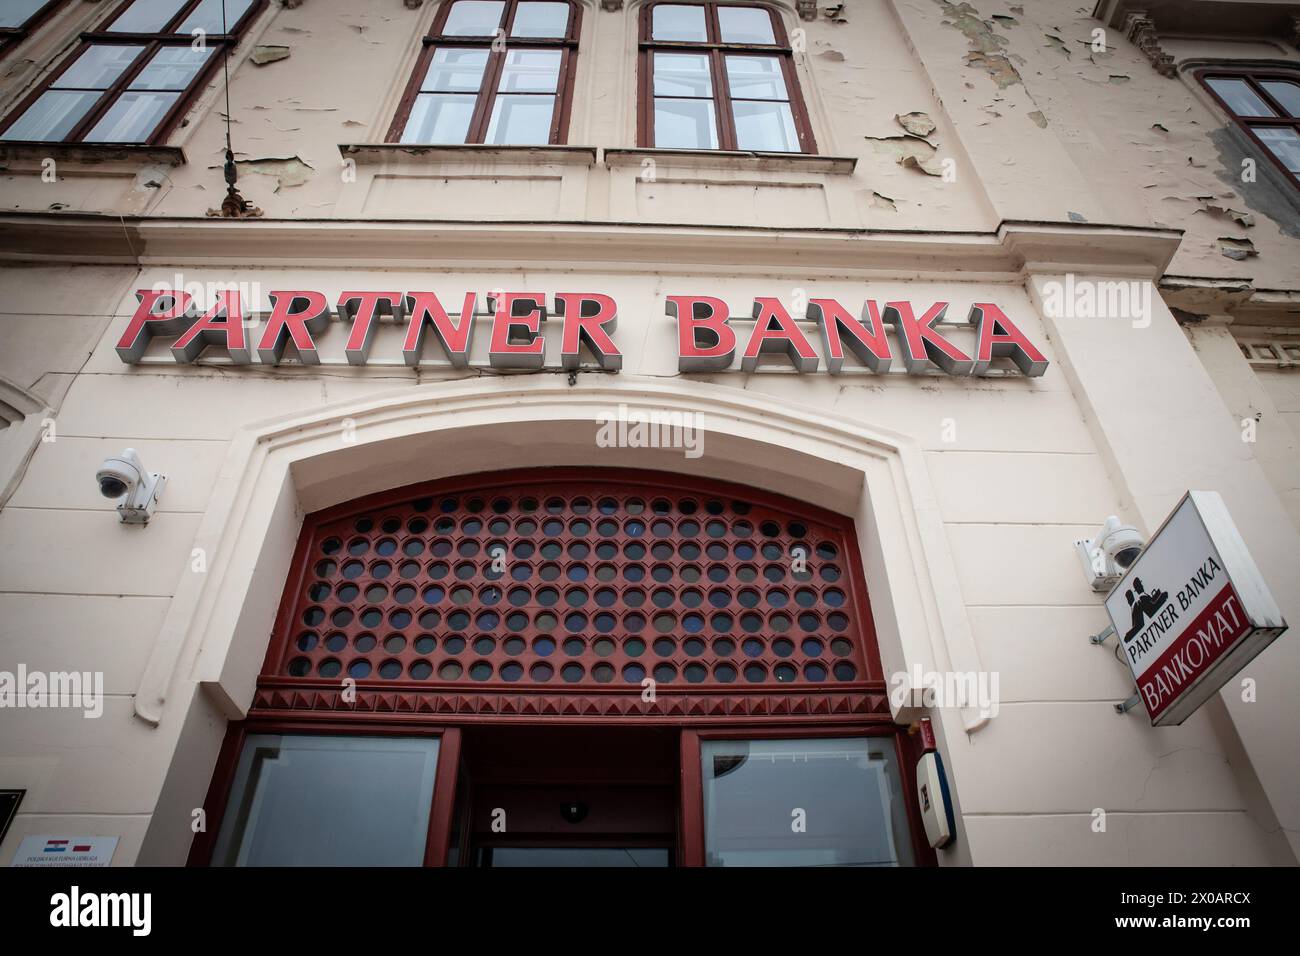 Immagine di un cartello con il logo di Partner banka nell'ufficio locale di Osijek, croazia. Partner Banka era un istituto finanziario che operava a Croa Foto Stock